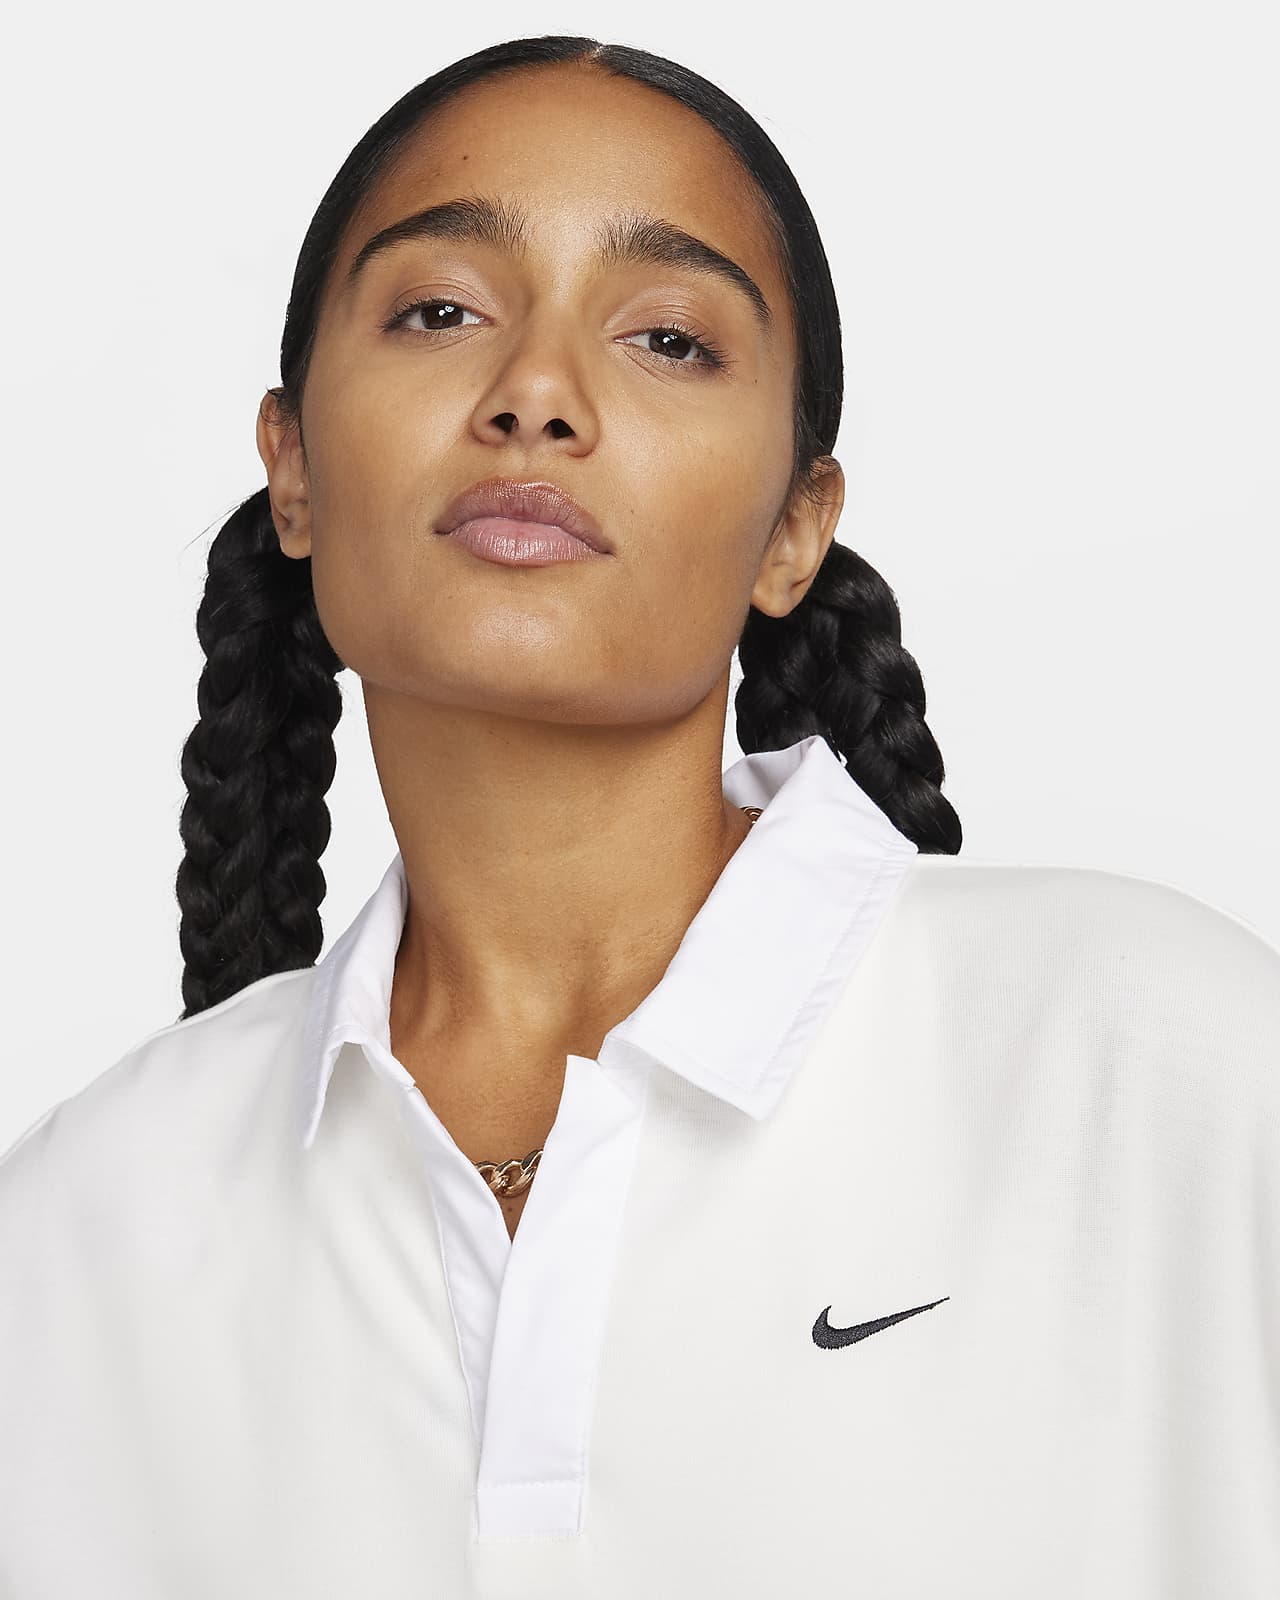 Nike Sportswear Essential Women's Short-Sleeve Polo Top (Plus Size